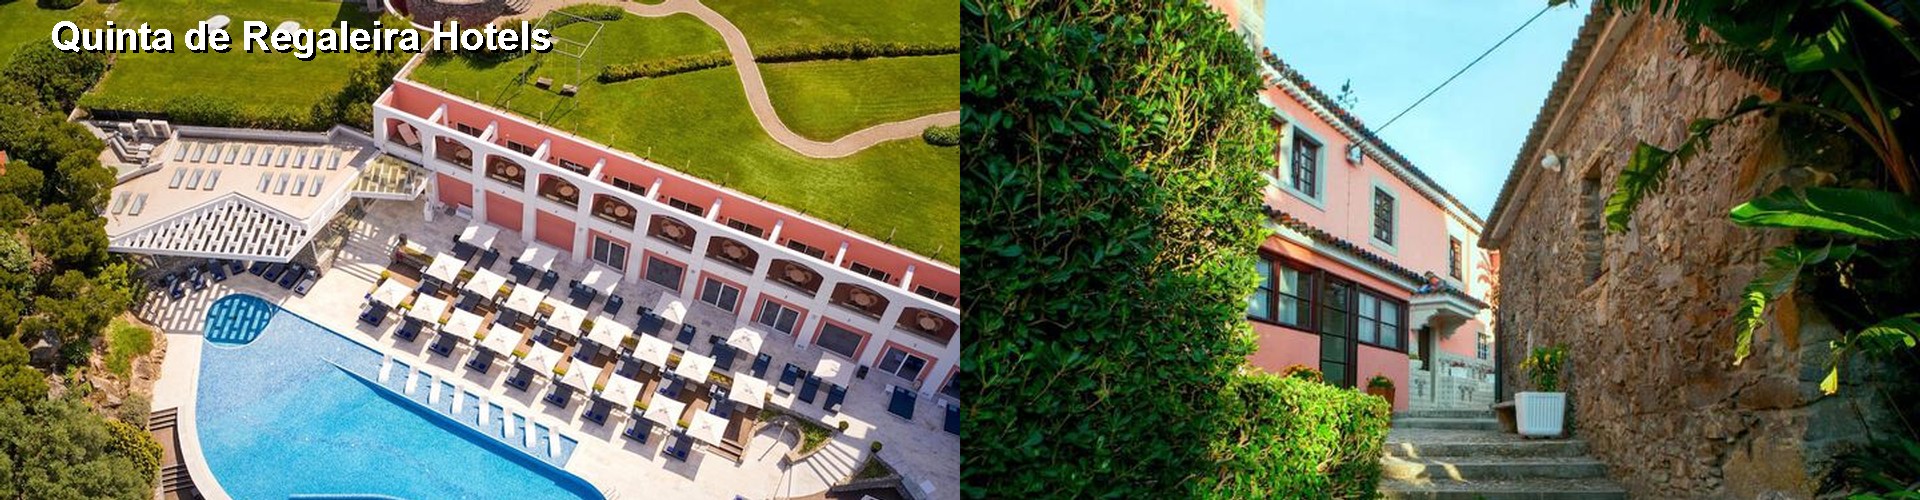 5 Best Hotels near Quinta de Regaleira